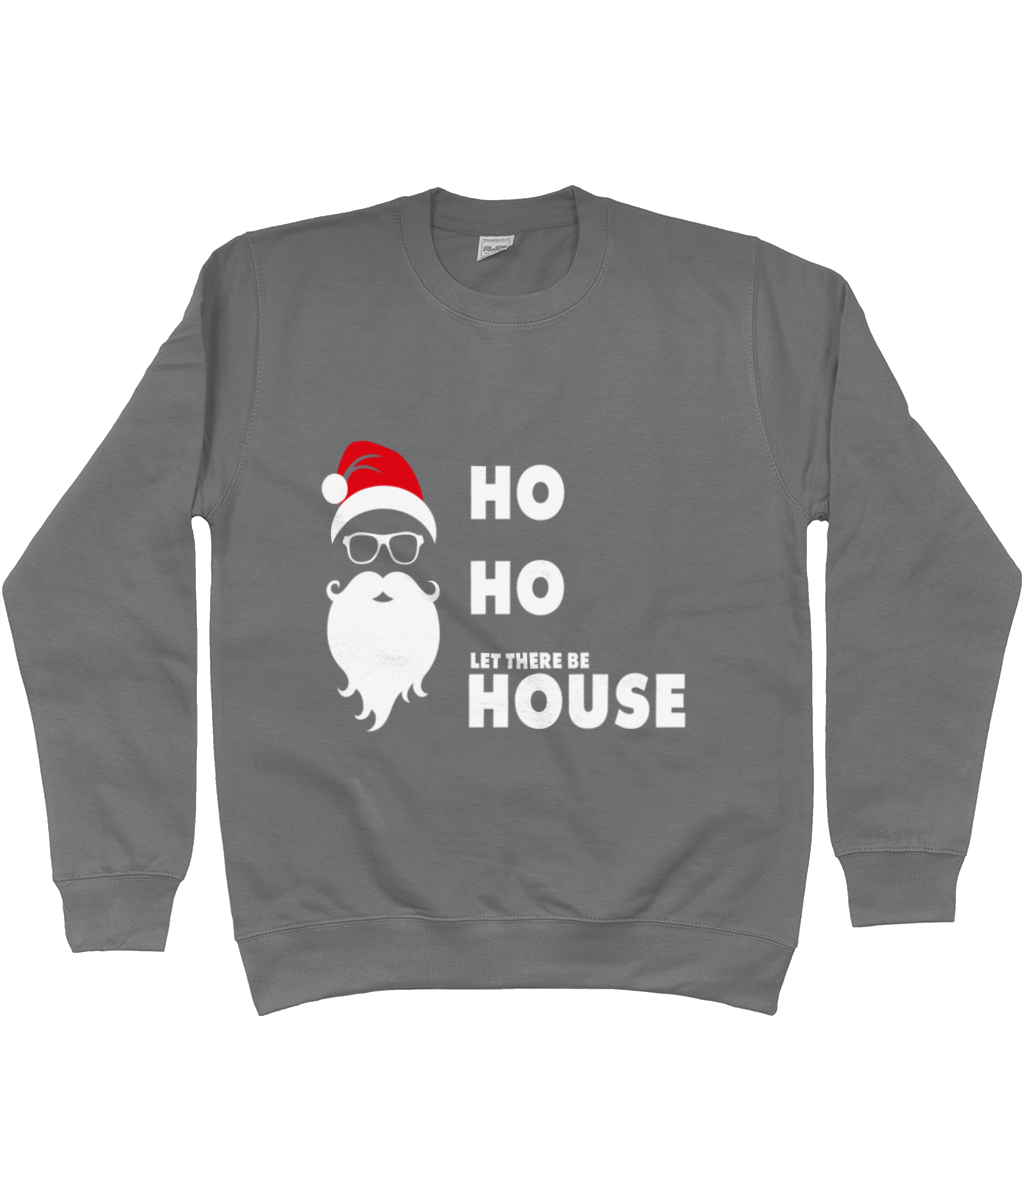 Sweatshirt Ho Ho House